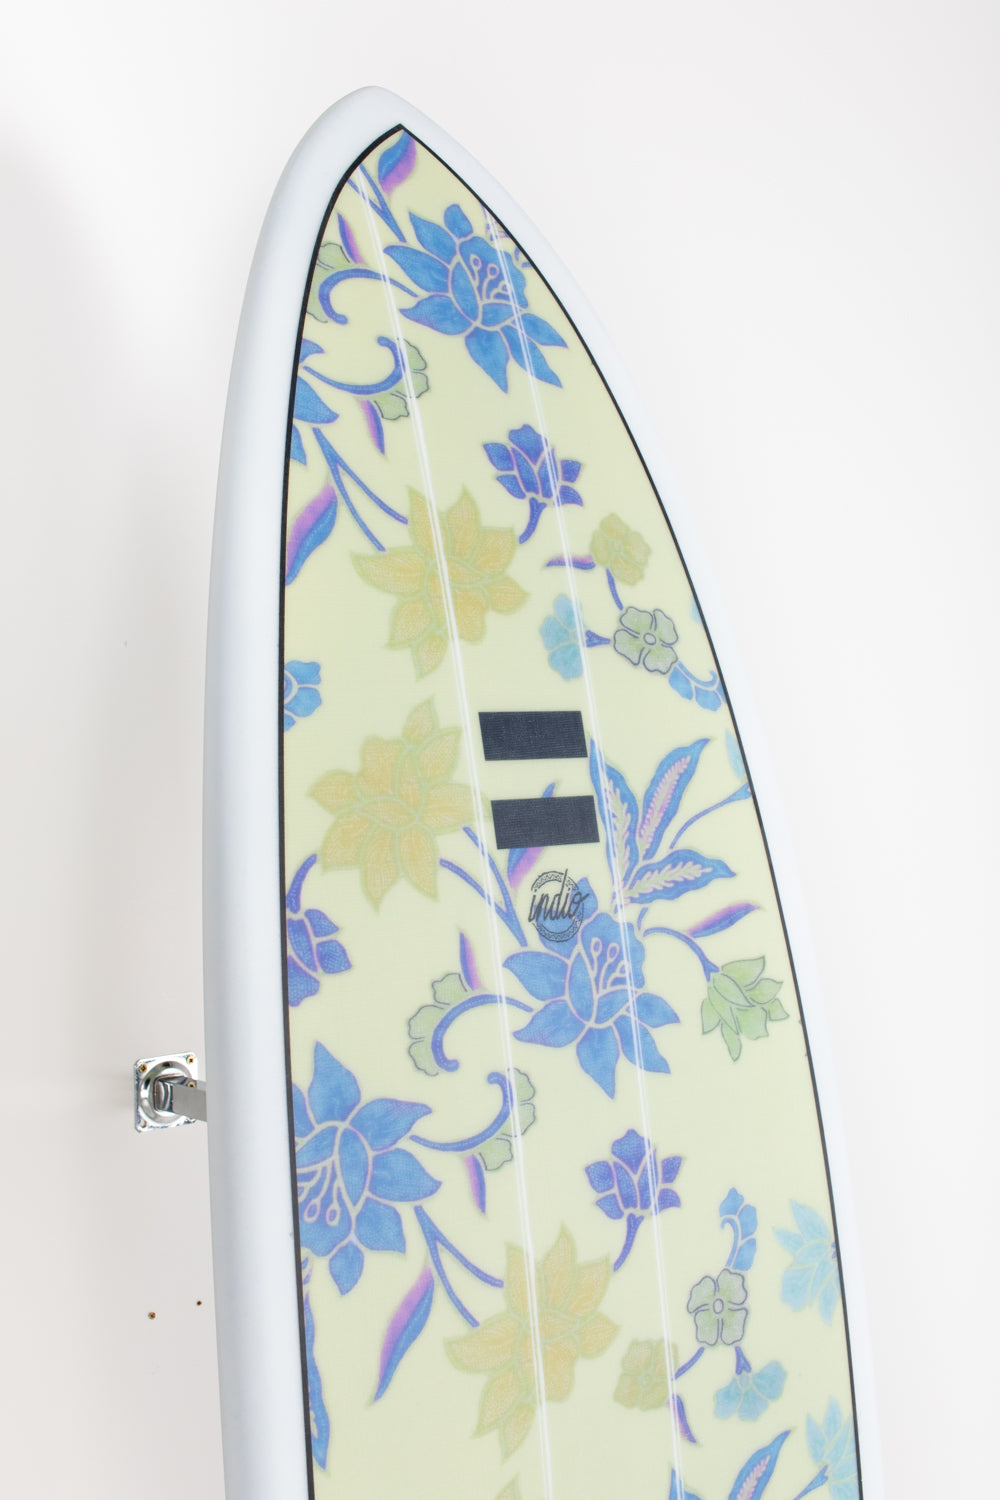 
                  
                    Pukas Surf Shop - Indio Endurance - THE EGG Flowers - 6´8 x 21 1/2 x 2 3/4 - 46L
                  
                